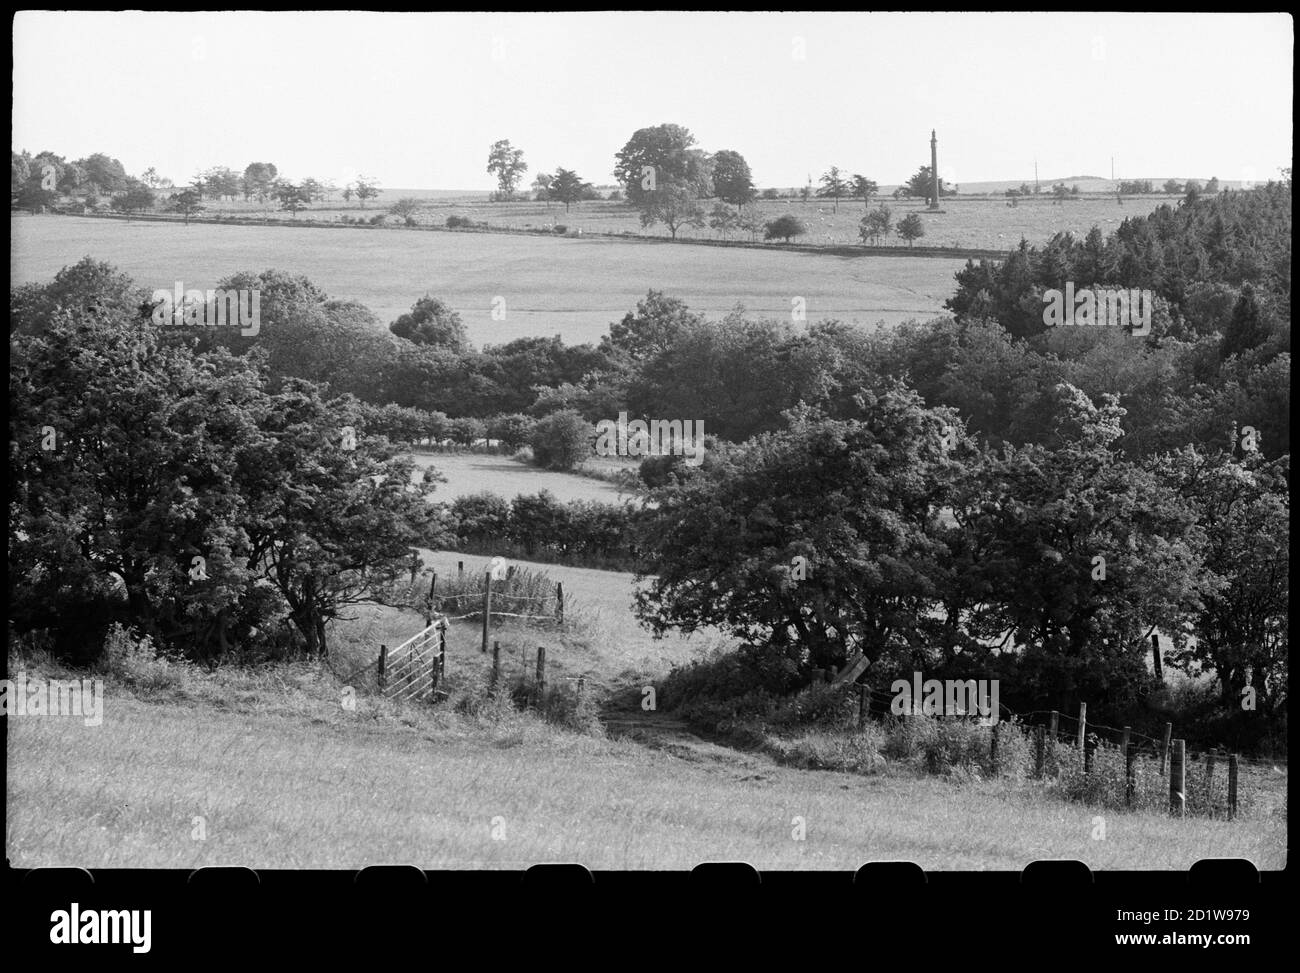 Ansicht einer Gedenksäule etwa 400 m südlich der Lemmington Hall, die 1786 von Sir John Soane in Surrey errichtet und 1928 nach Northumberland umgesichtet wurde, in der Ferne mit Feldern und Laub im Vordergrund. Stockfoto